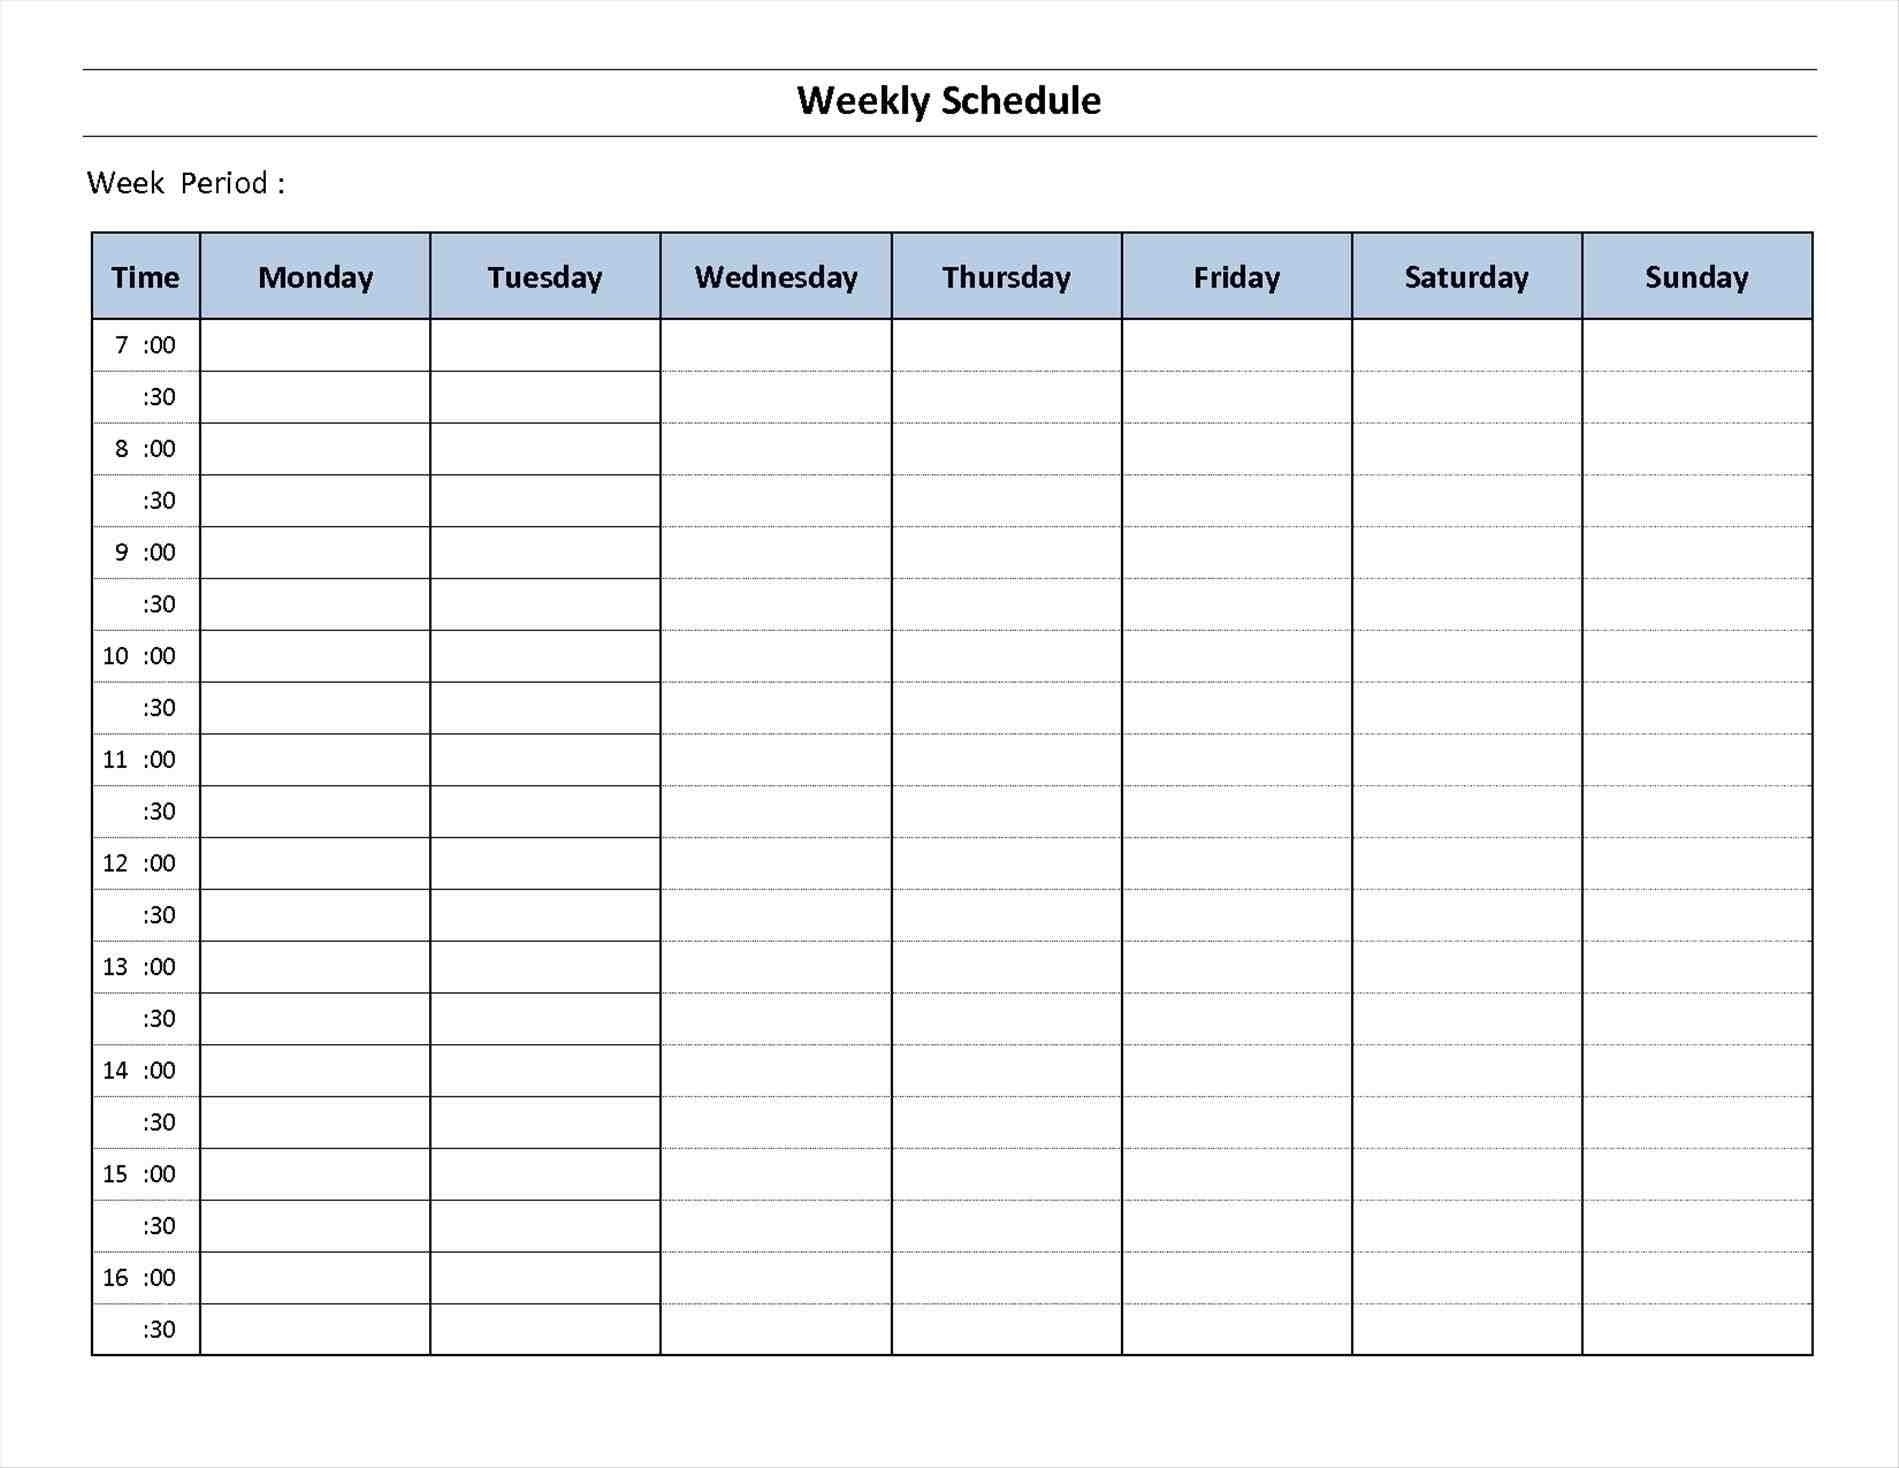 Weekly Planning Calendar Printable Planner Free Online | Smorad throughout Free Online Printable Weekly Calendar